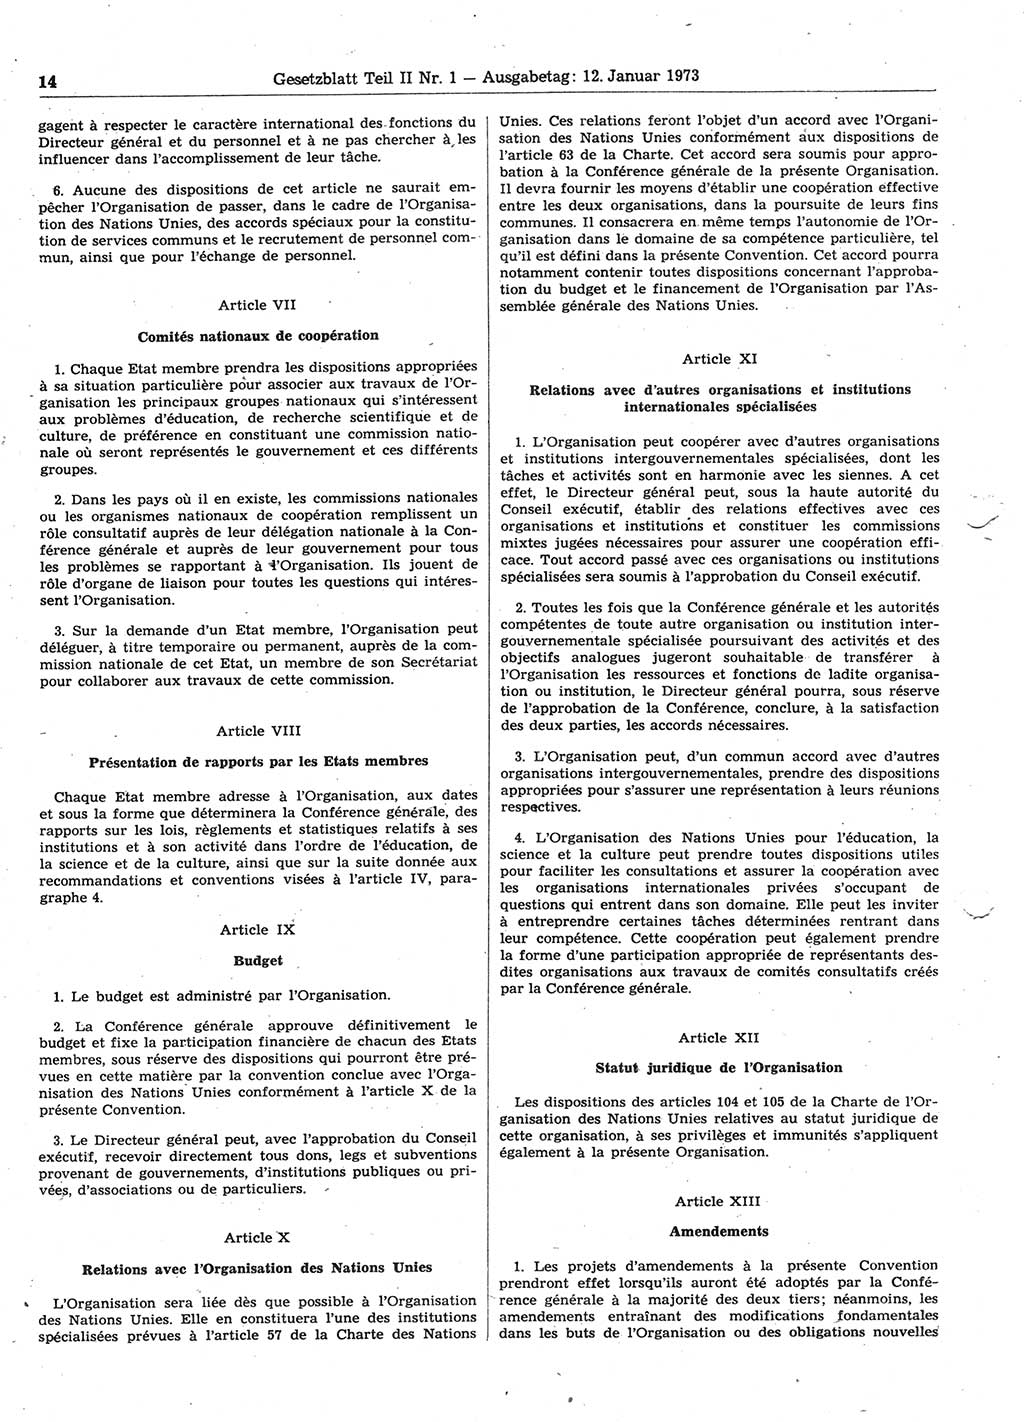 Gesetzblatt (GBl.) der Deutschen Demokratischen Republik (DDR) Teil ⅠⅠ 1973, Seite 14 (GBl. DDR ⅠⅠ 1973, S. 14)